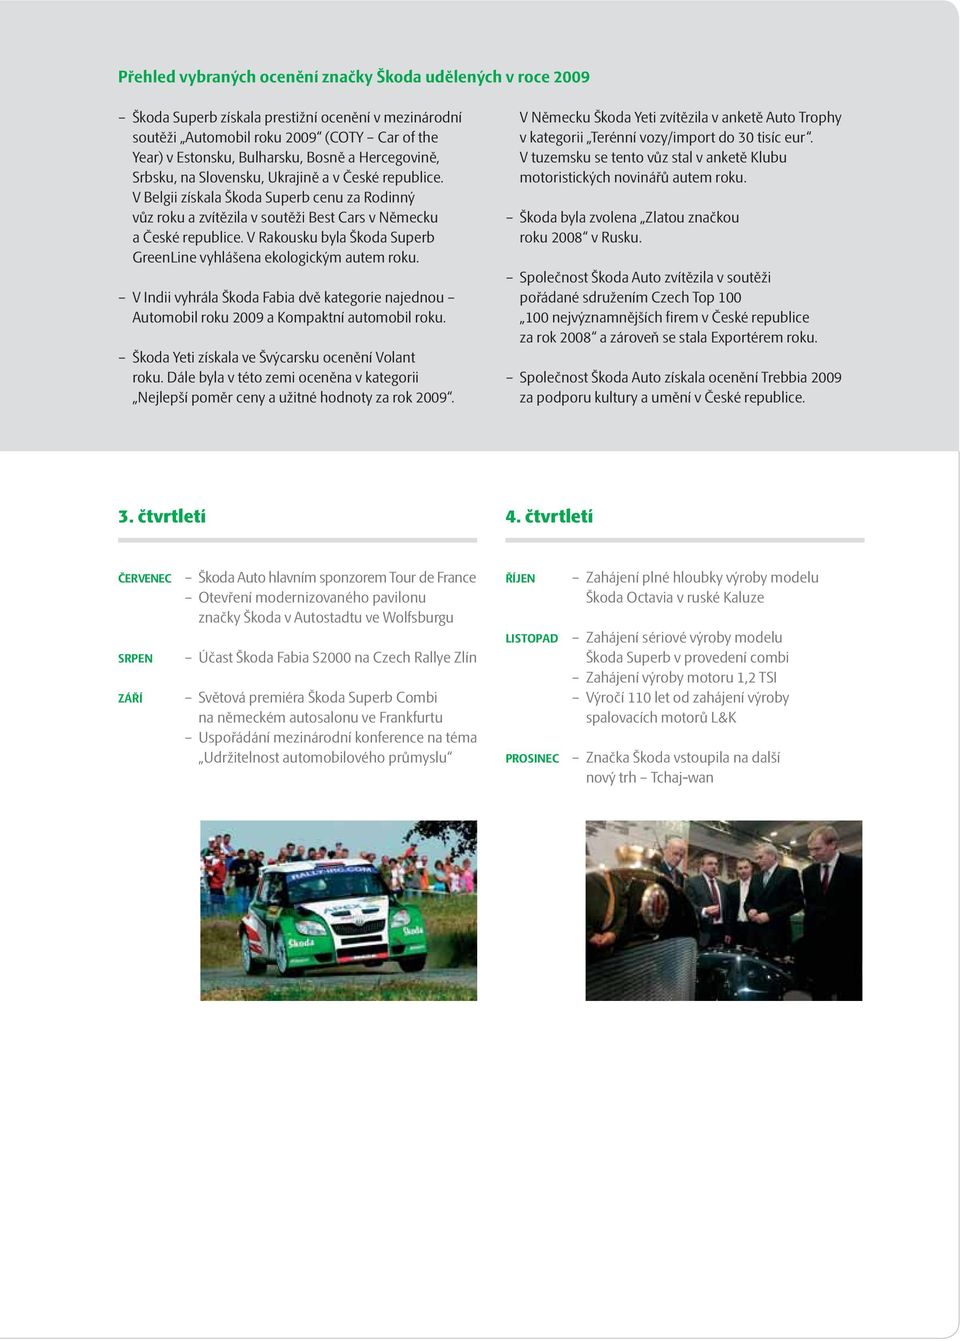 V Rakousku byla Škoda Superb GreenLine vyhlášena ekologickým autem roku. V Indii vyhrála Škoda Fabia dvě kategorie najednou Automobil roku 2009 a Kompaktní automobil roku.